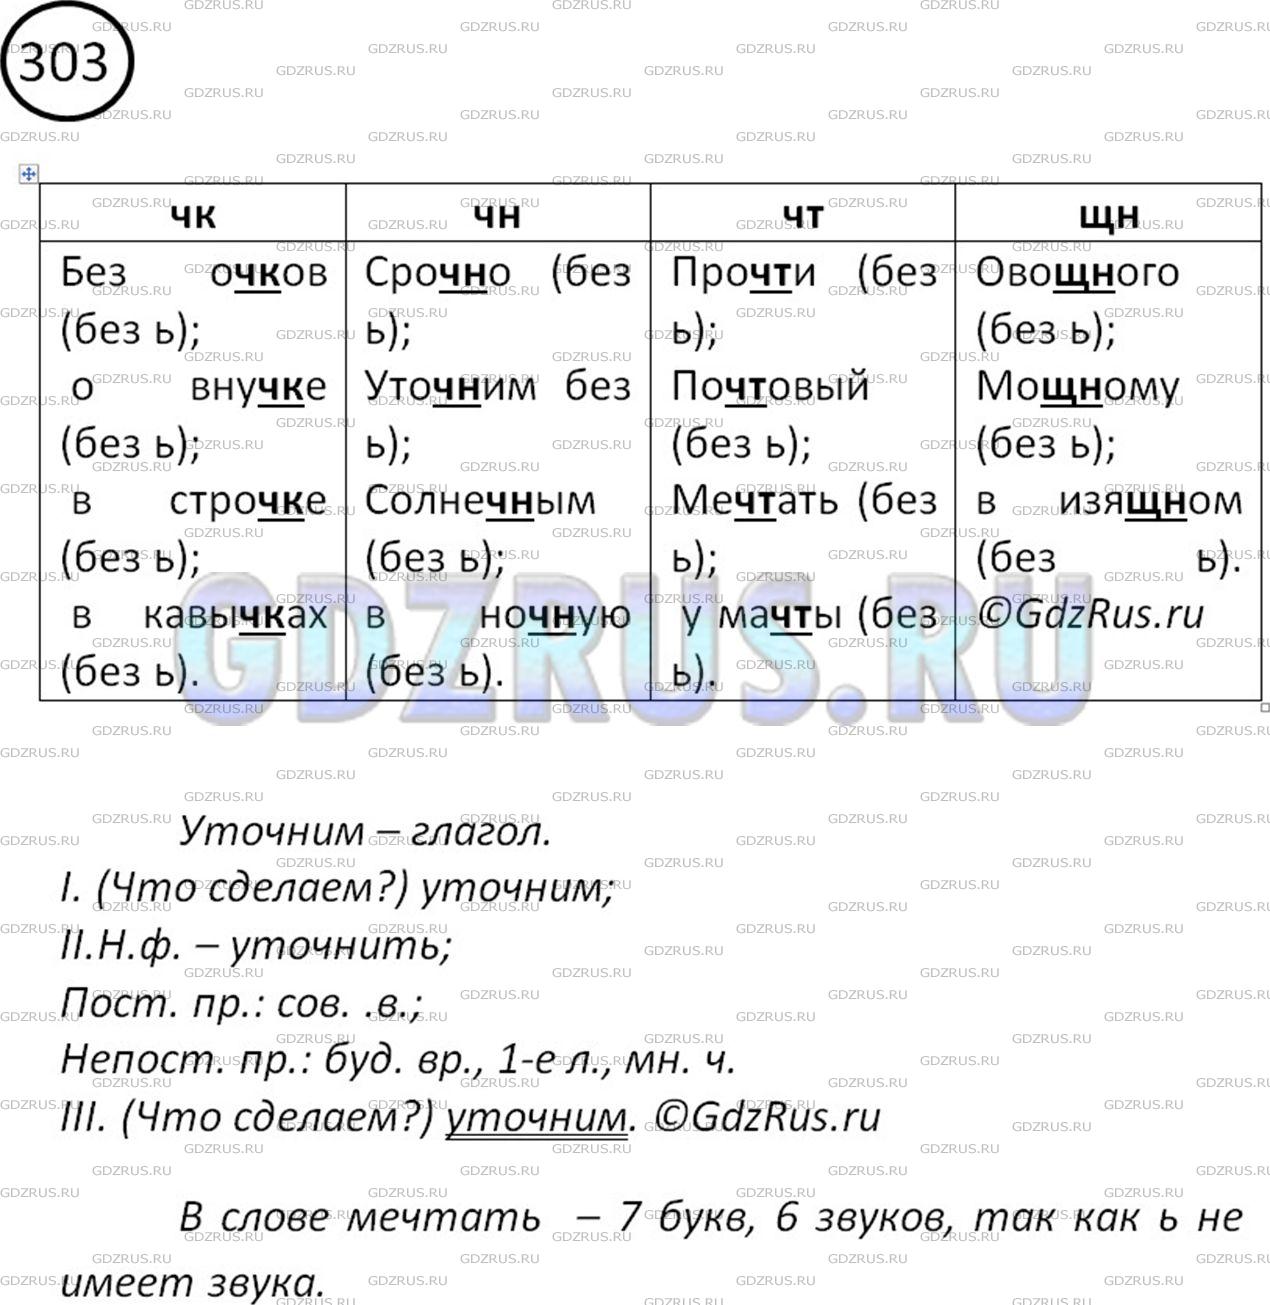 Фото решения 2: Номер №314 из ГДЗ по Русскому языку 5 класс: Ладыженская Т.А. 2019г.